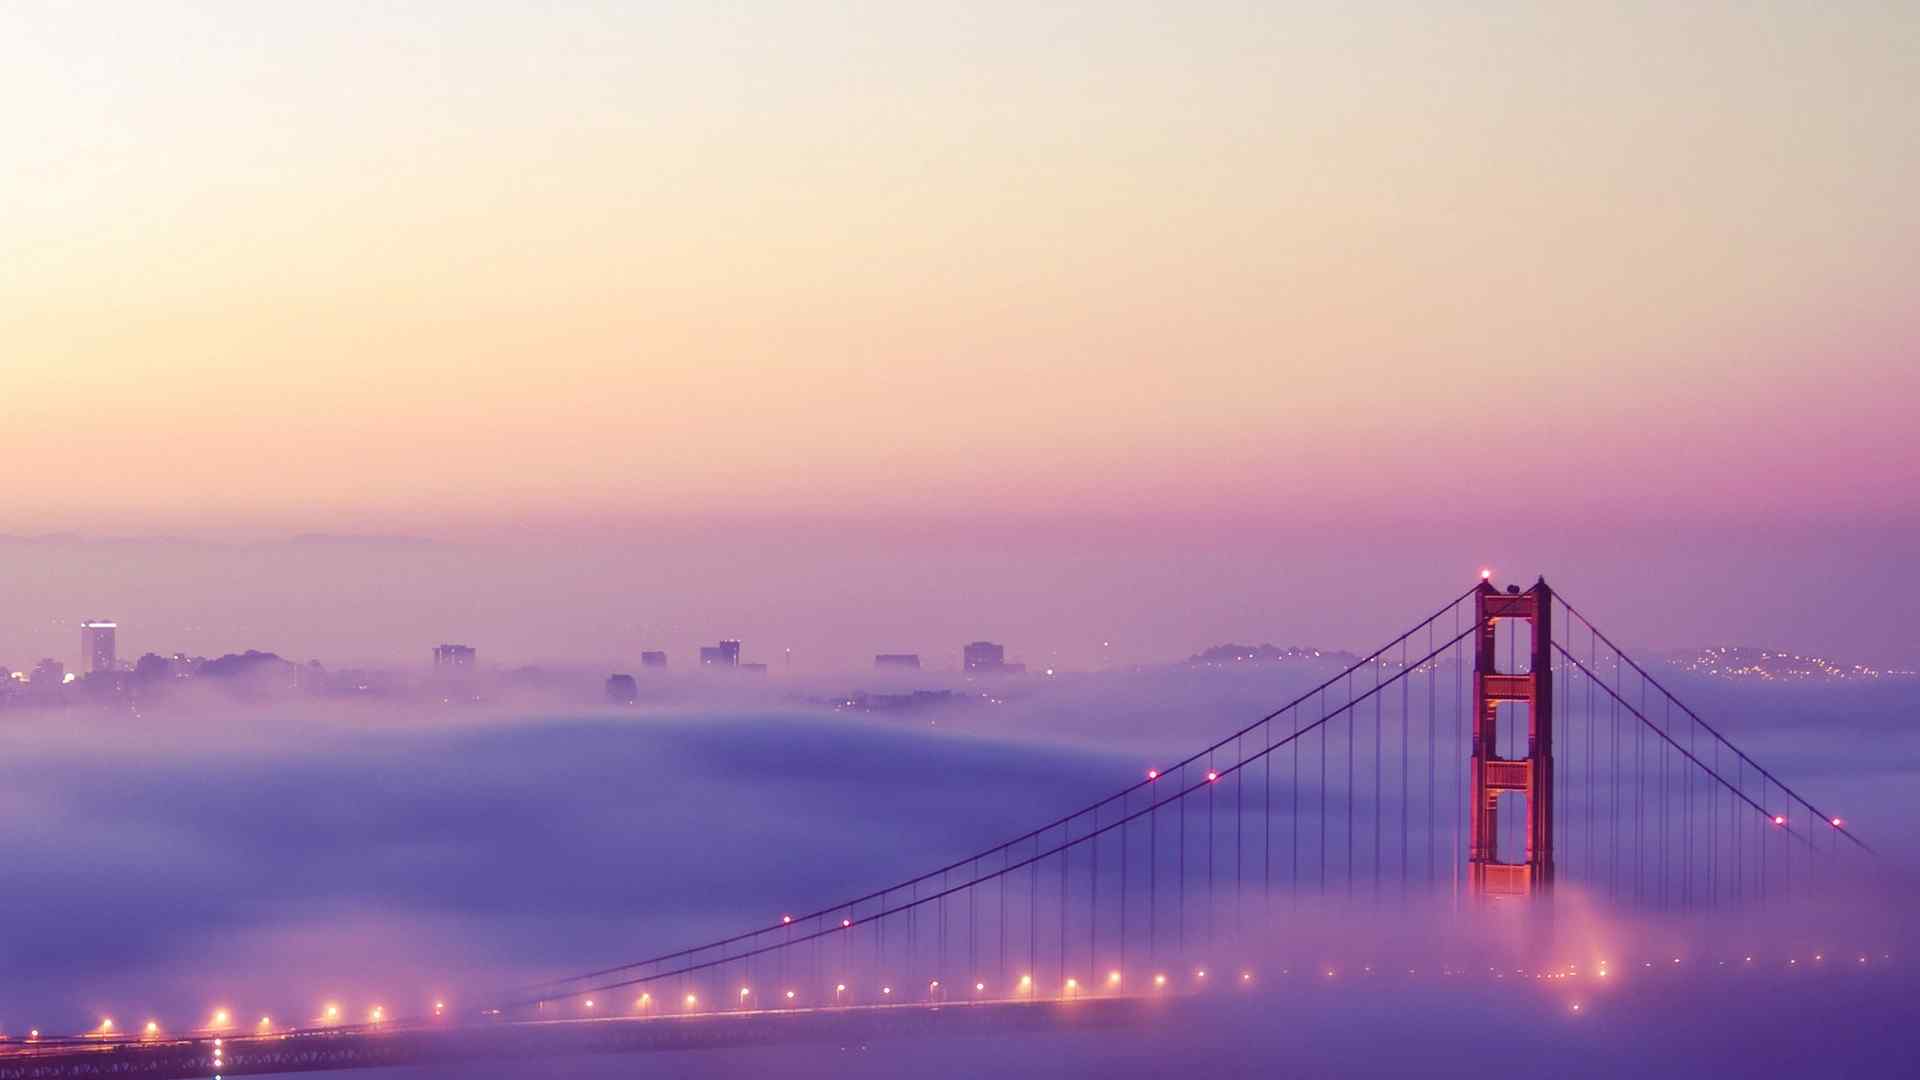 美丽的美国旧金山金门大桥风景图片电脑桌面壁纸高清 第一辑